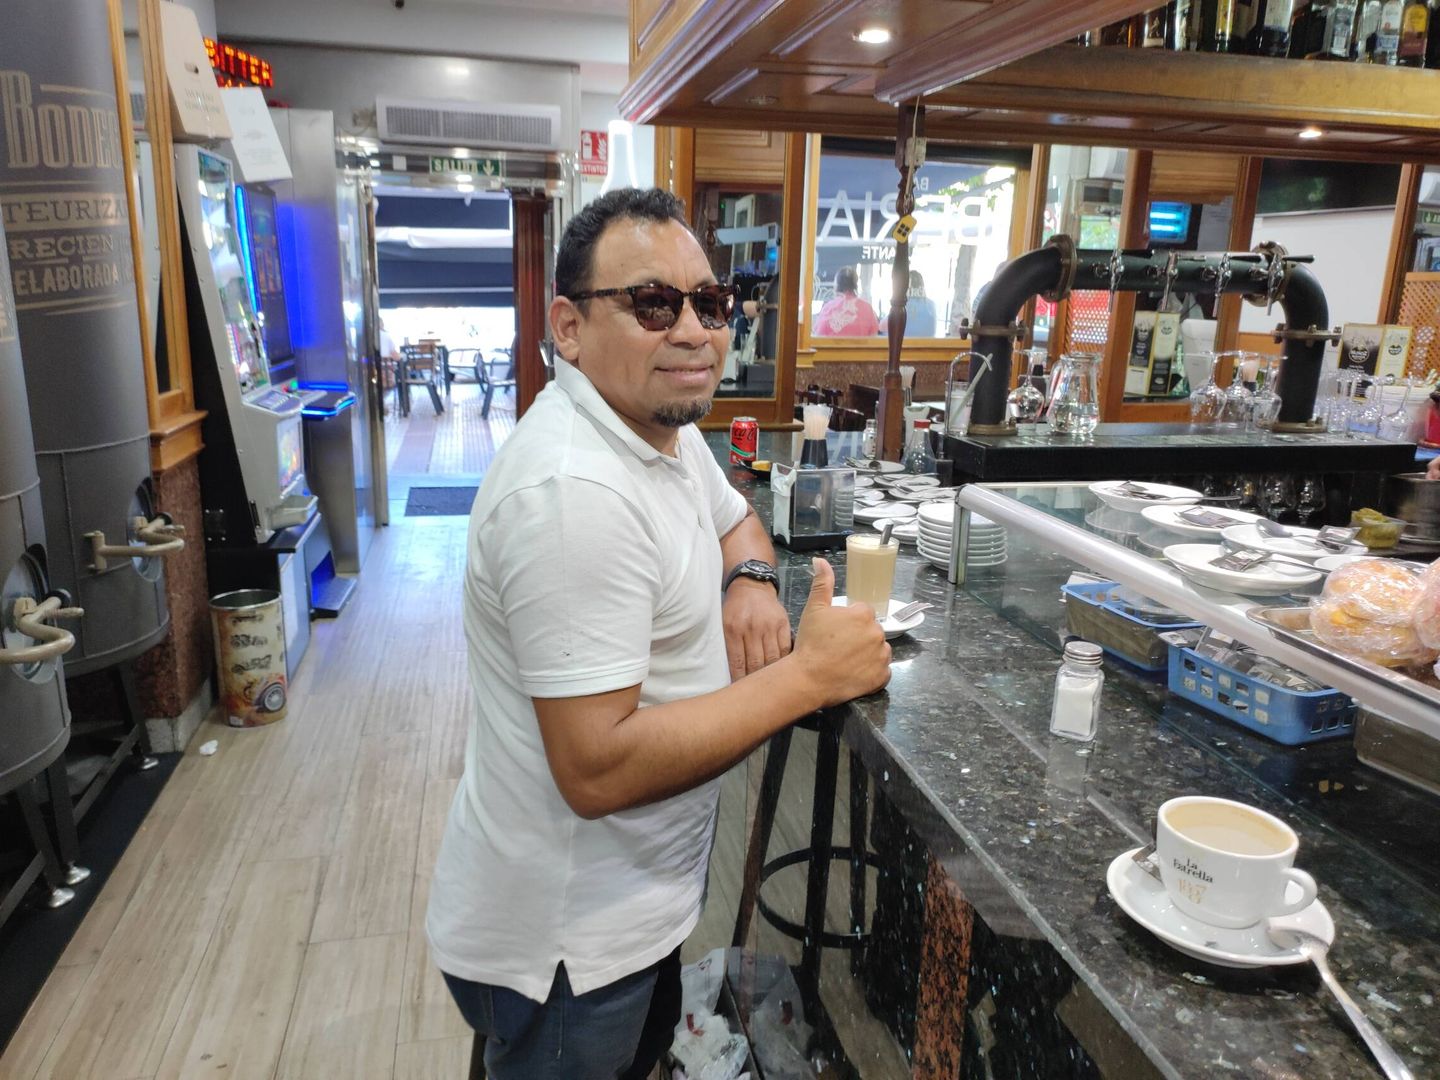 El taxista Héctor tomando un café en el bar Iberia. (L.V.)